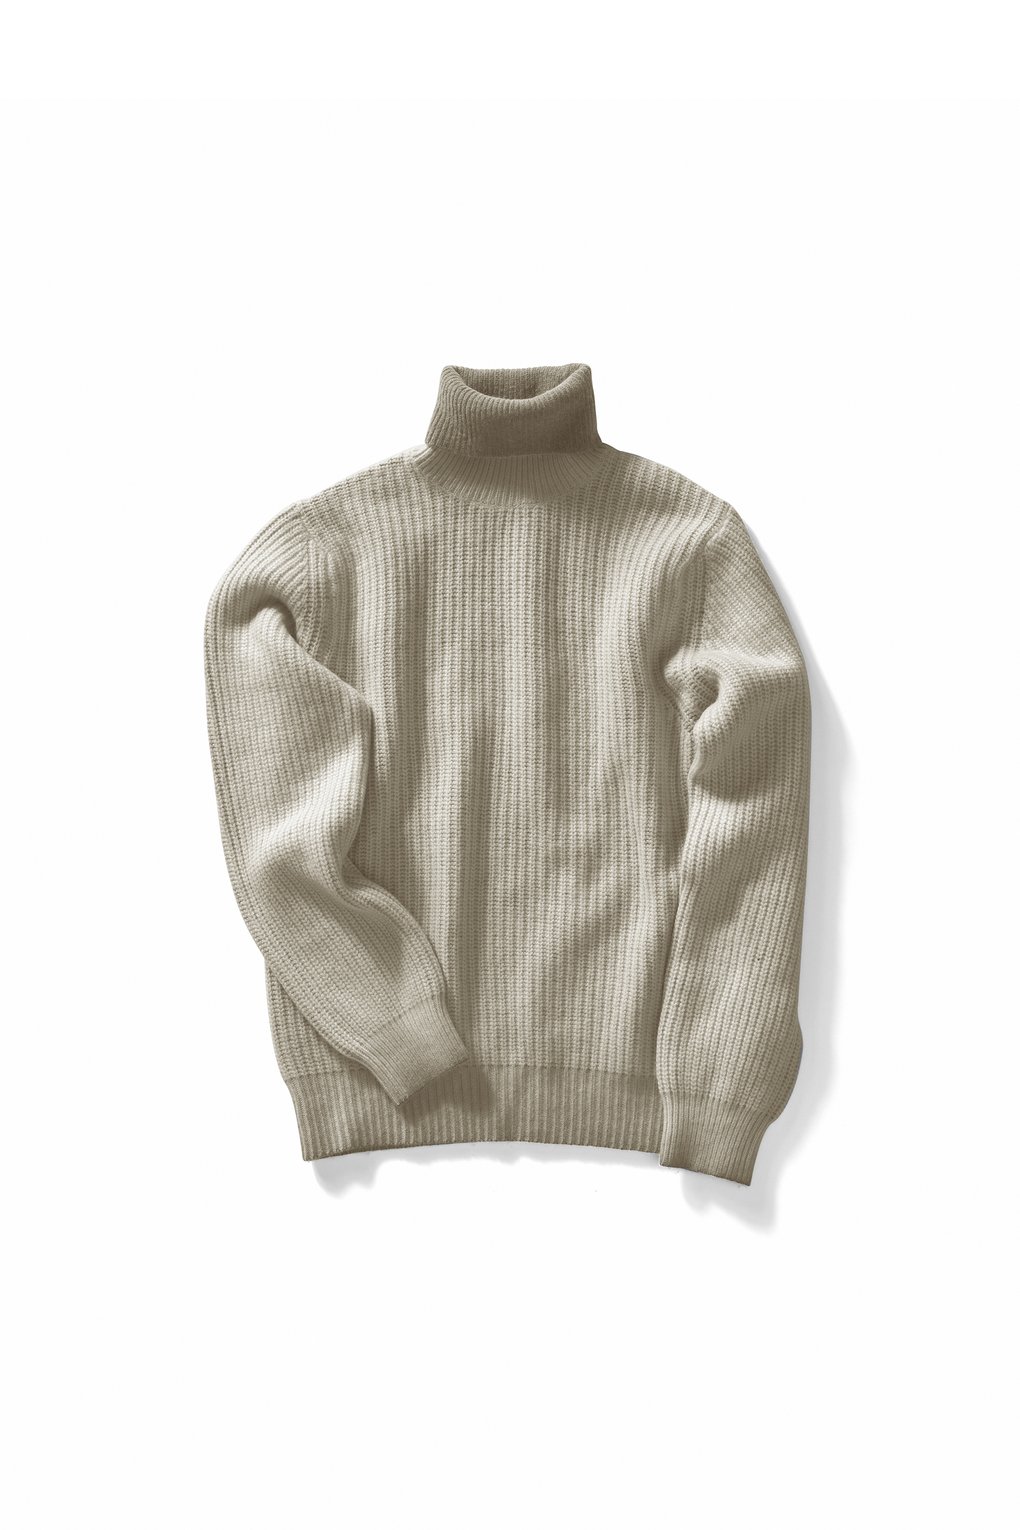 Men's turtleneck sweater - MM2079TWTIE - Biscuit Fade